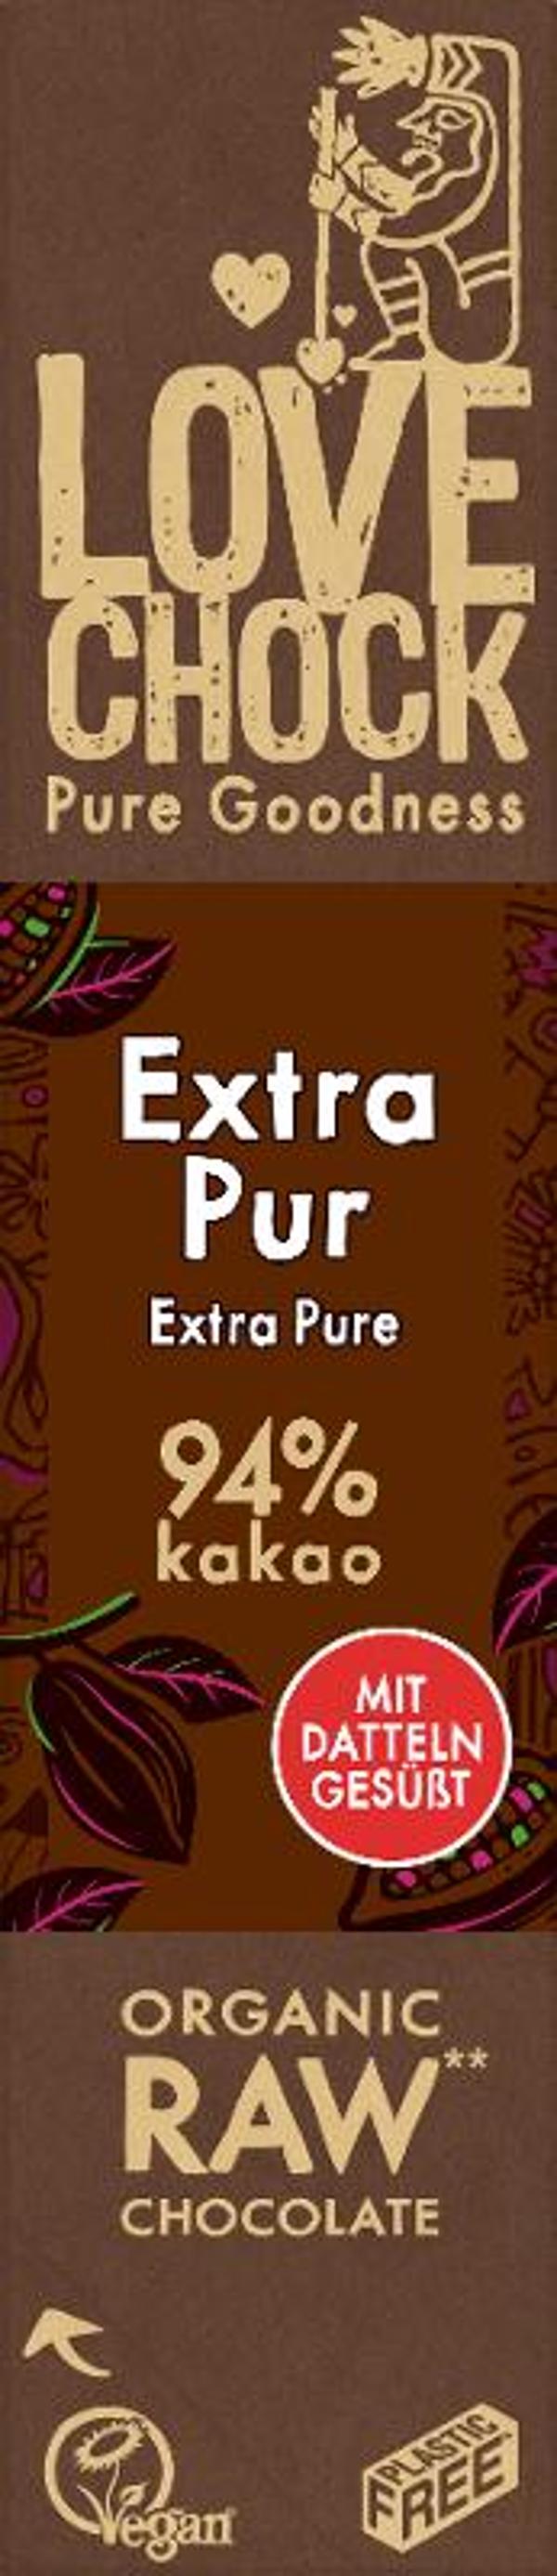 Produktfoto zu Lovechoc Riegel Extra Pur, 94% Kakao, RAW